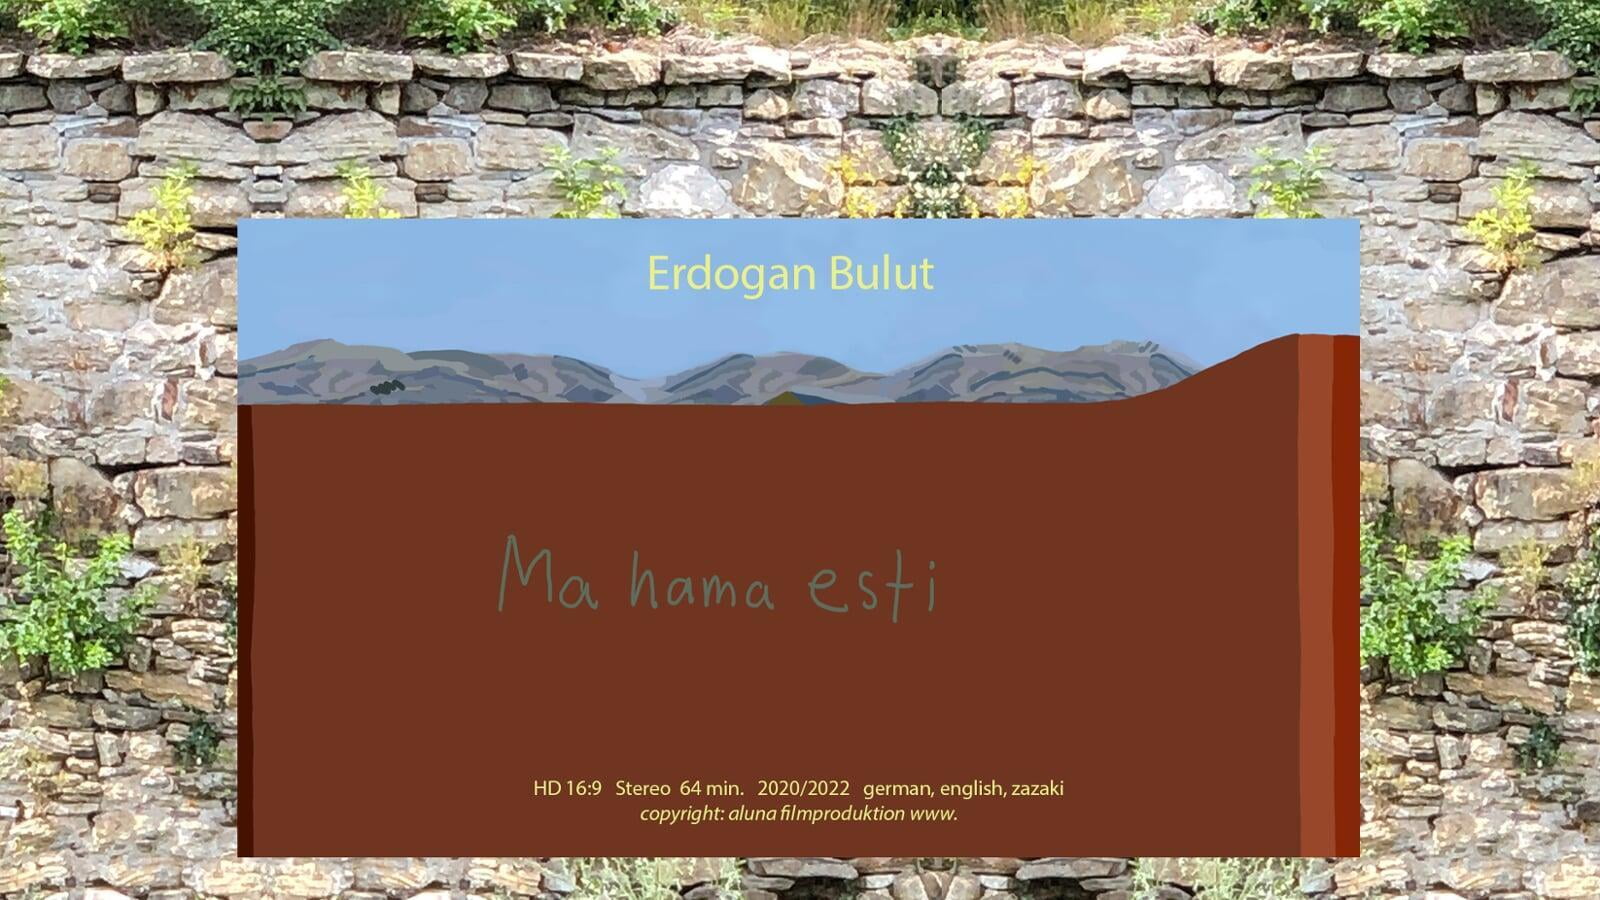 Neuer Film von Erdogan Bulut: "Ma Hama Esti - Uns gibt es noch" 2022